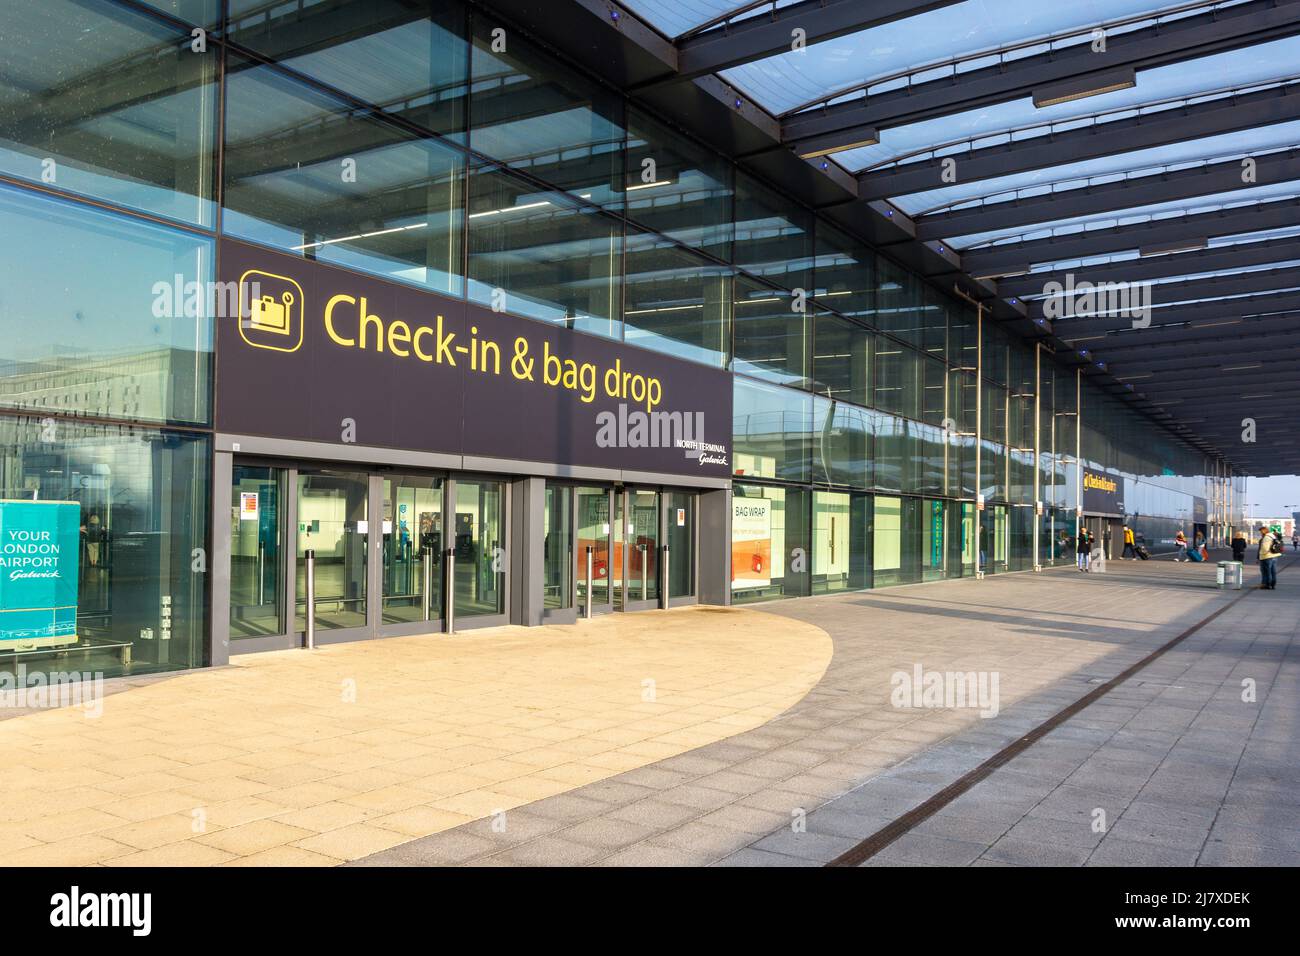 Enregistrement et dépôt de bagages au North terminal, aéroport de Londres Gatwick, Crawley, West Sussex, Angleterre, Royaume-Uni Banque D'Images